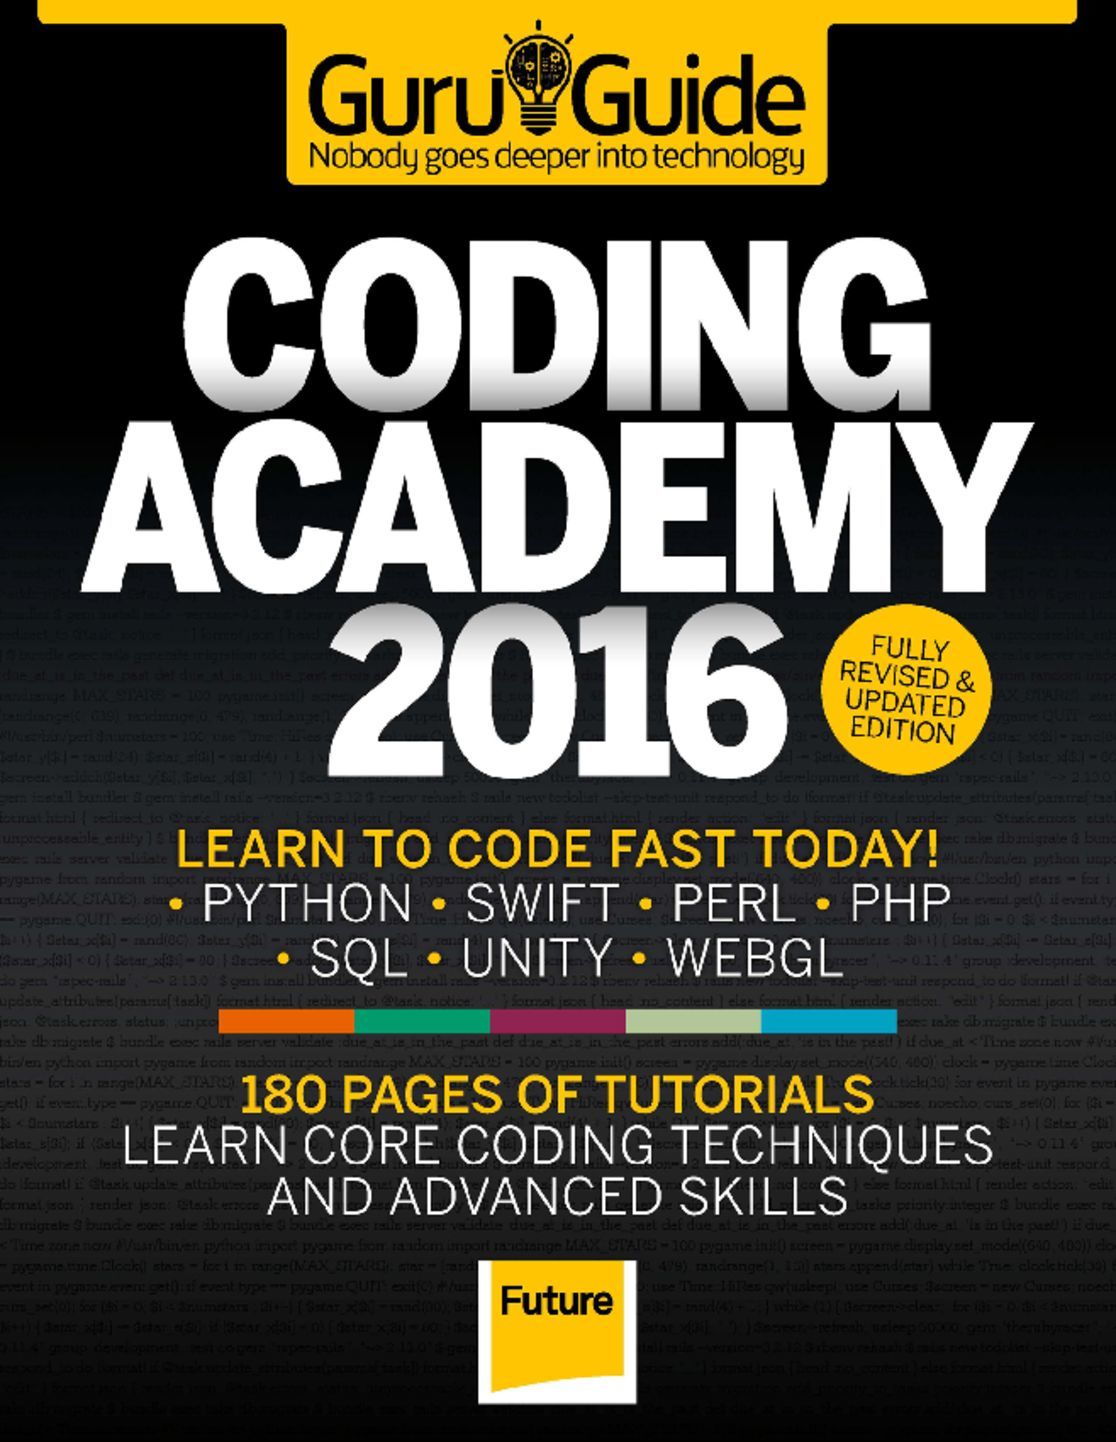 con academy coding